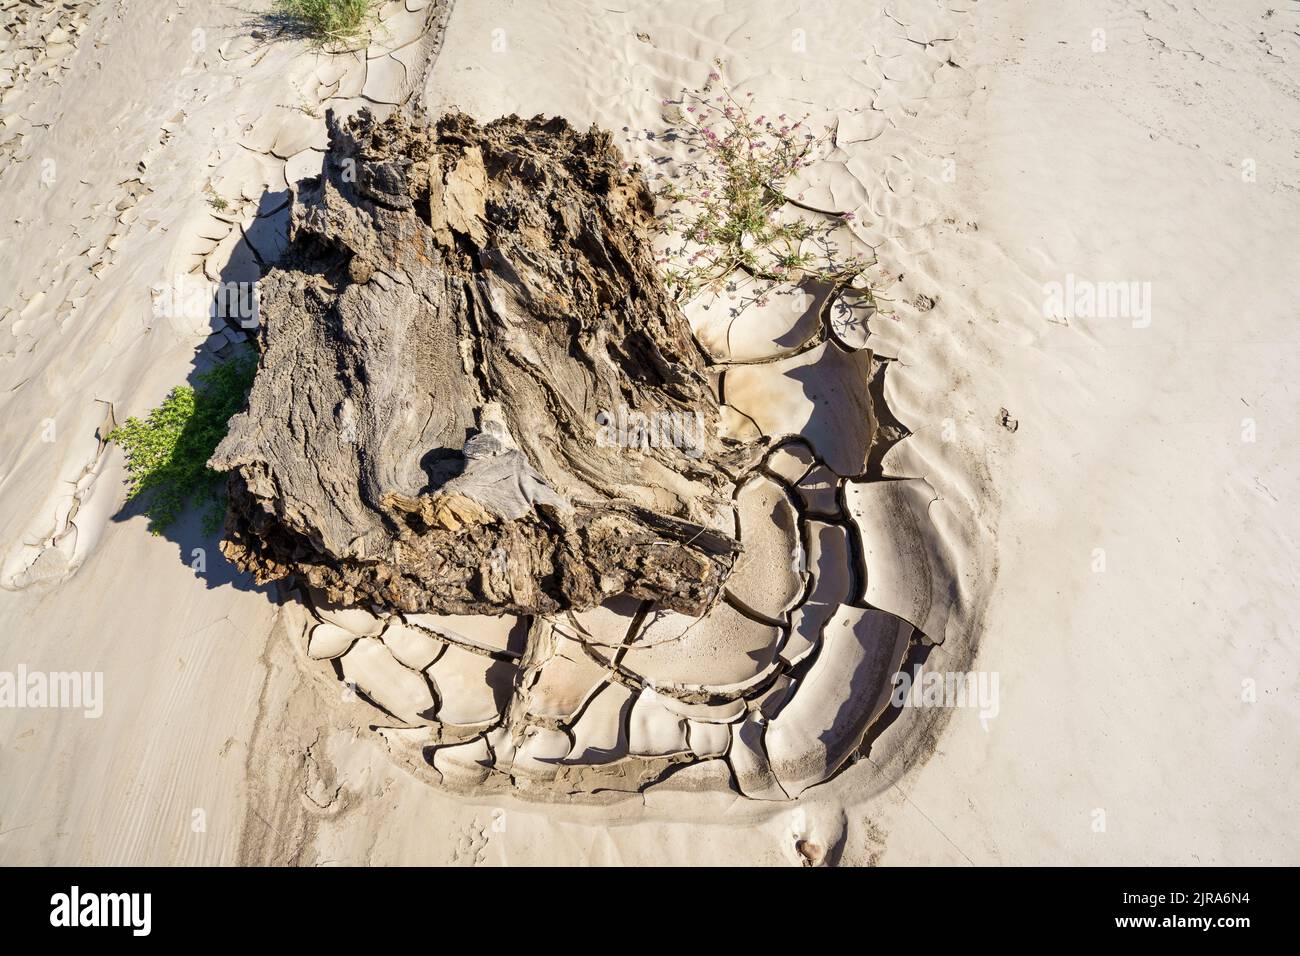 Image symbolique, espoir, environnement, changement climatique, morceau de bois mort dans les modèles de lit de rivière sec. Rivière Swakop, Namibie, Afrique Banque D'Images